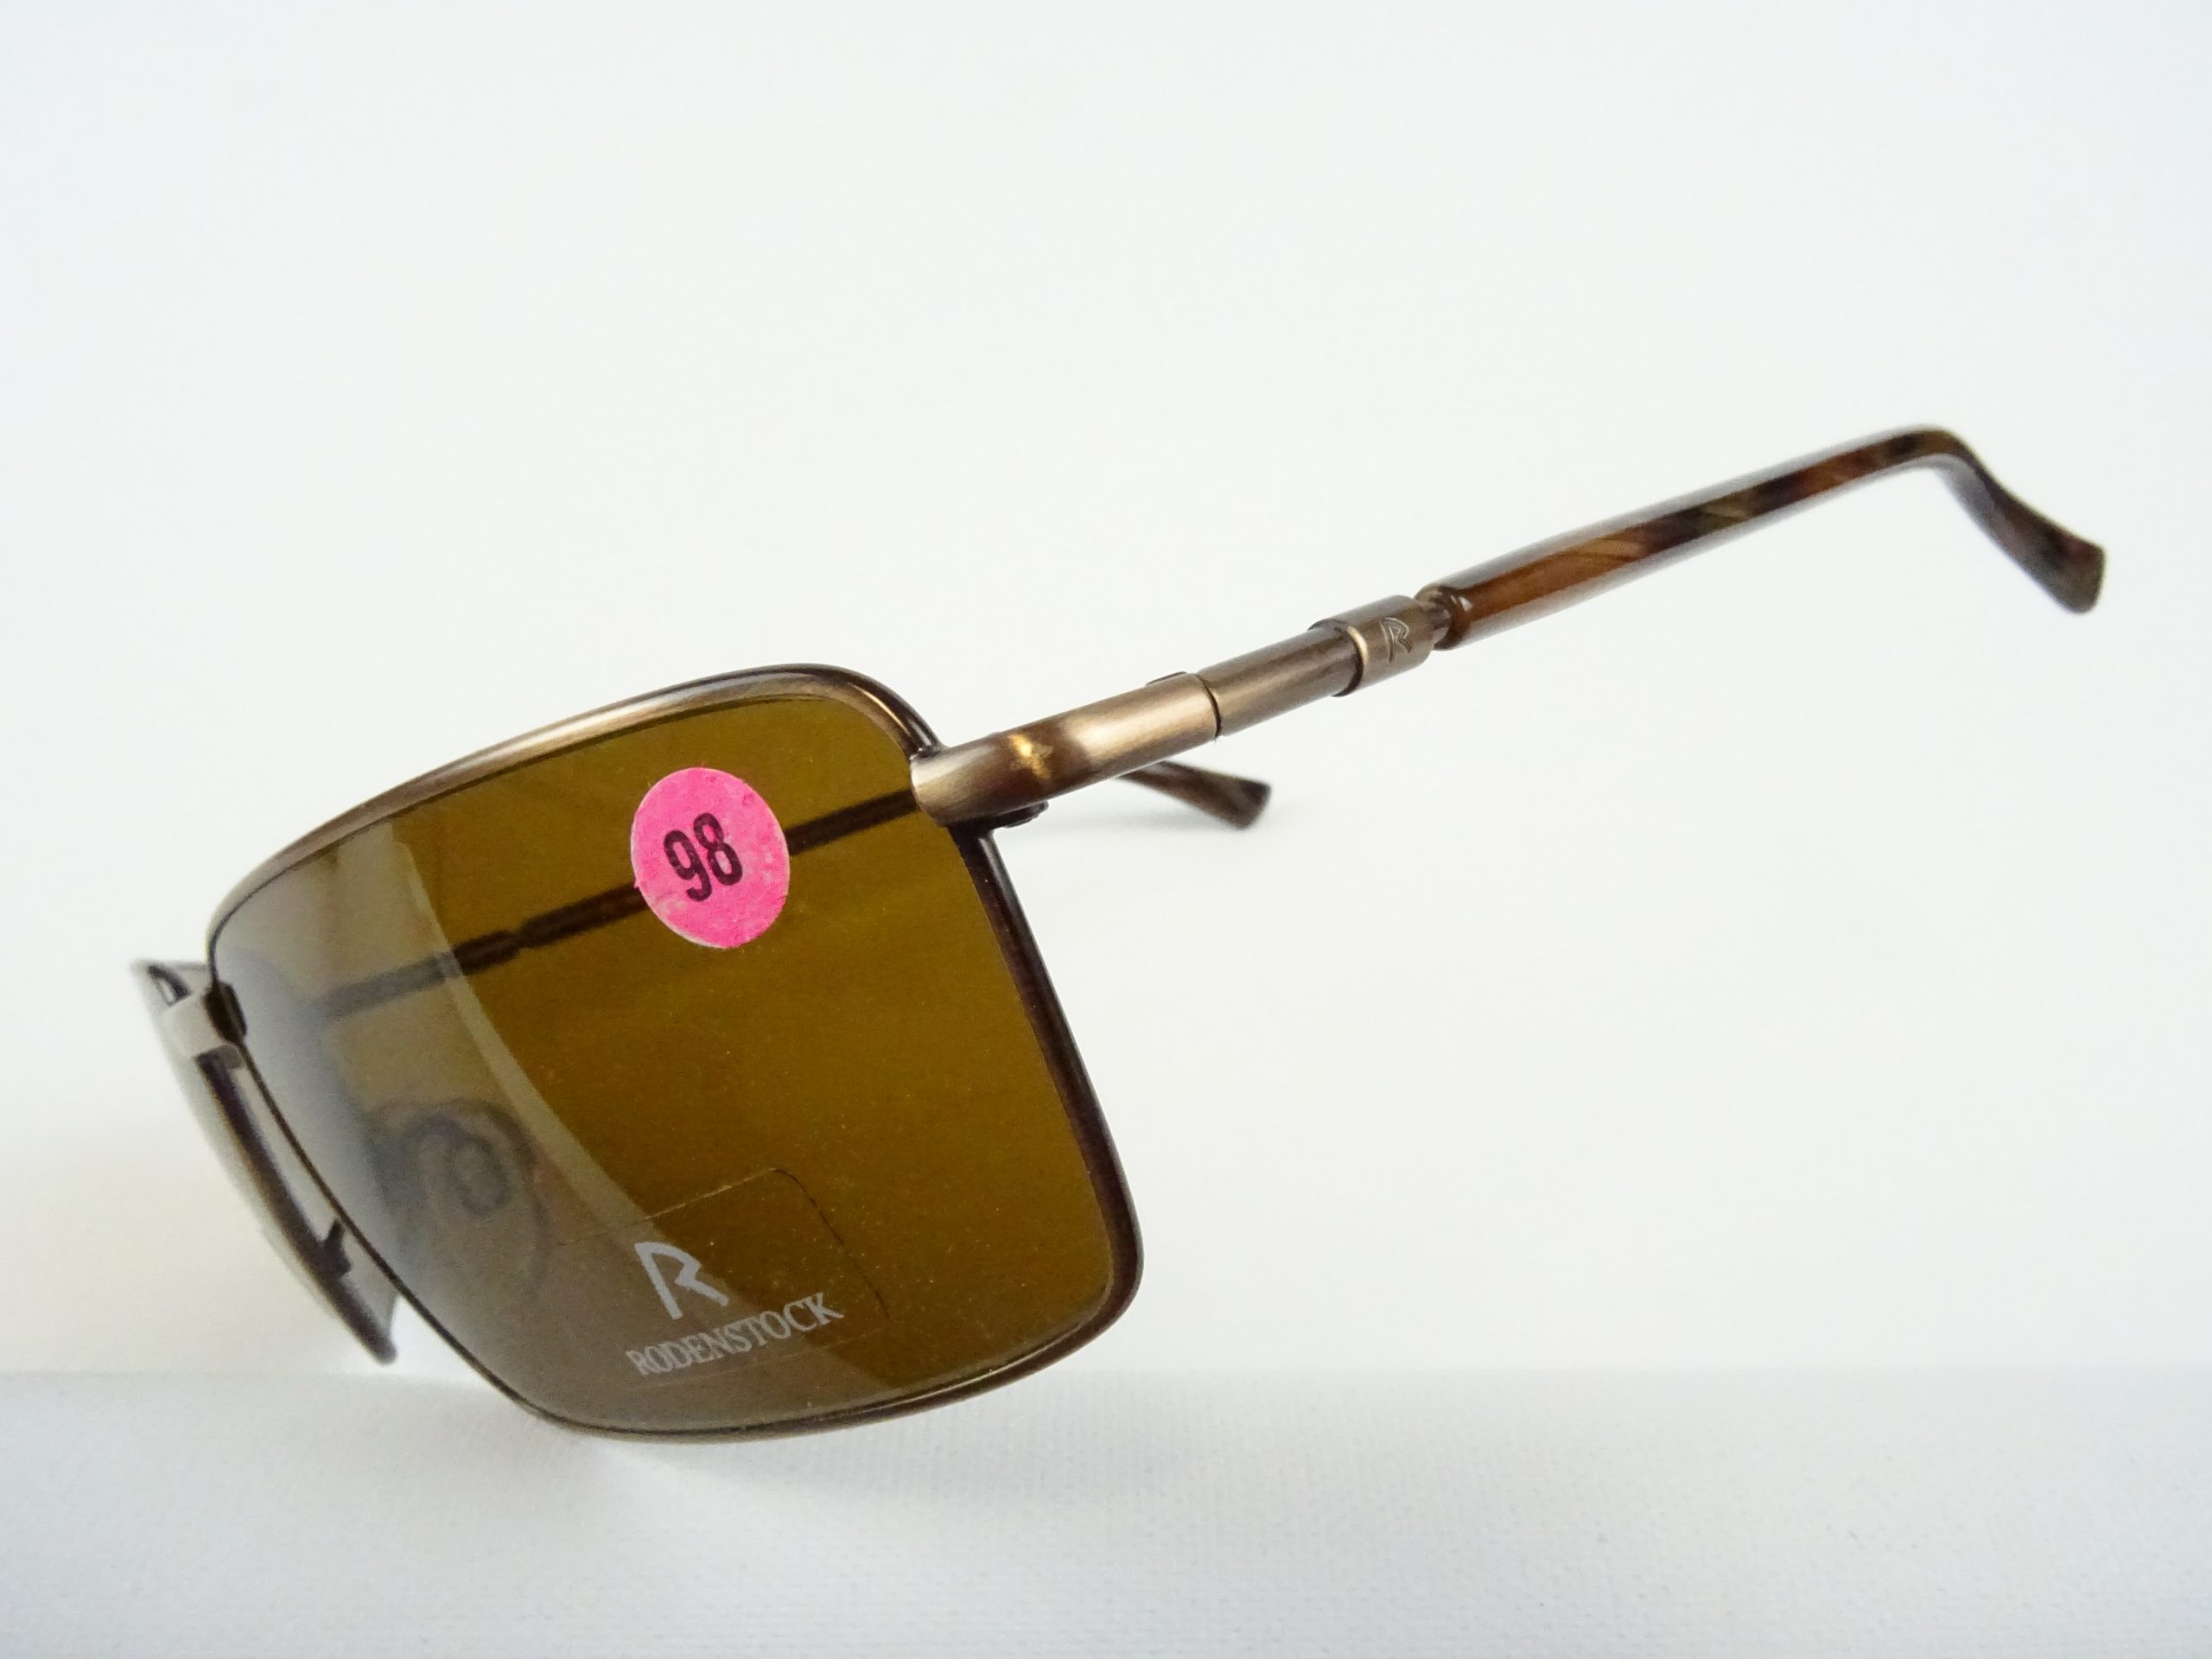 Brillen Sonnenbrille Form Herren Gr. 400 – sportlich SUN Vintage Gläser UV braun Contrast eckige M Welt Metallfassung curved RODENSTOCK